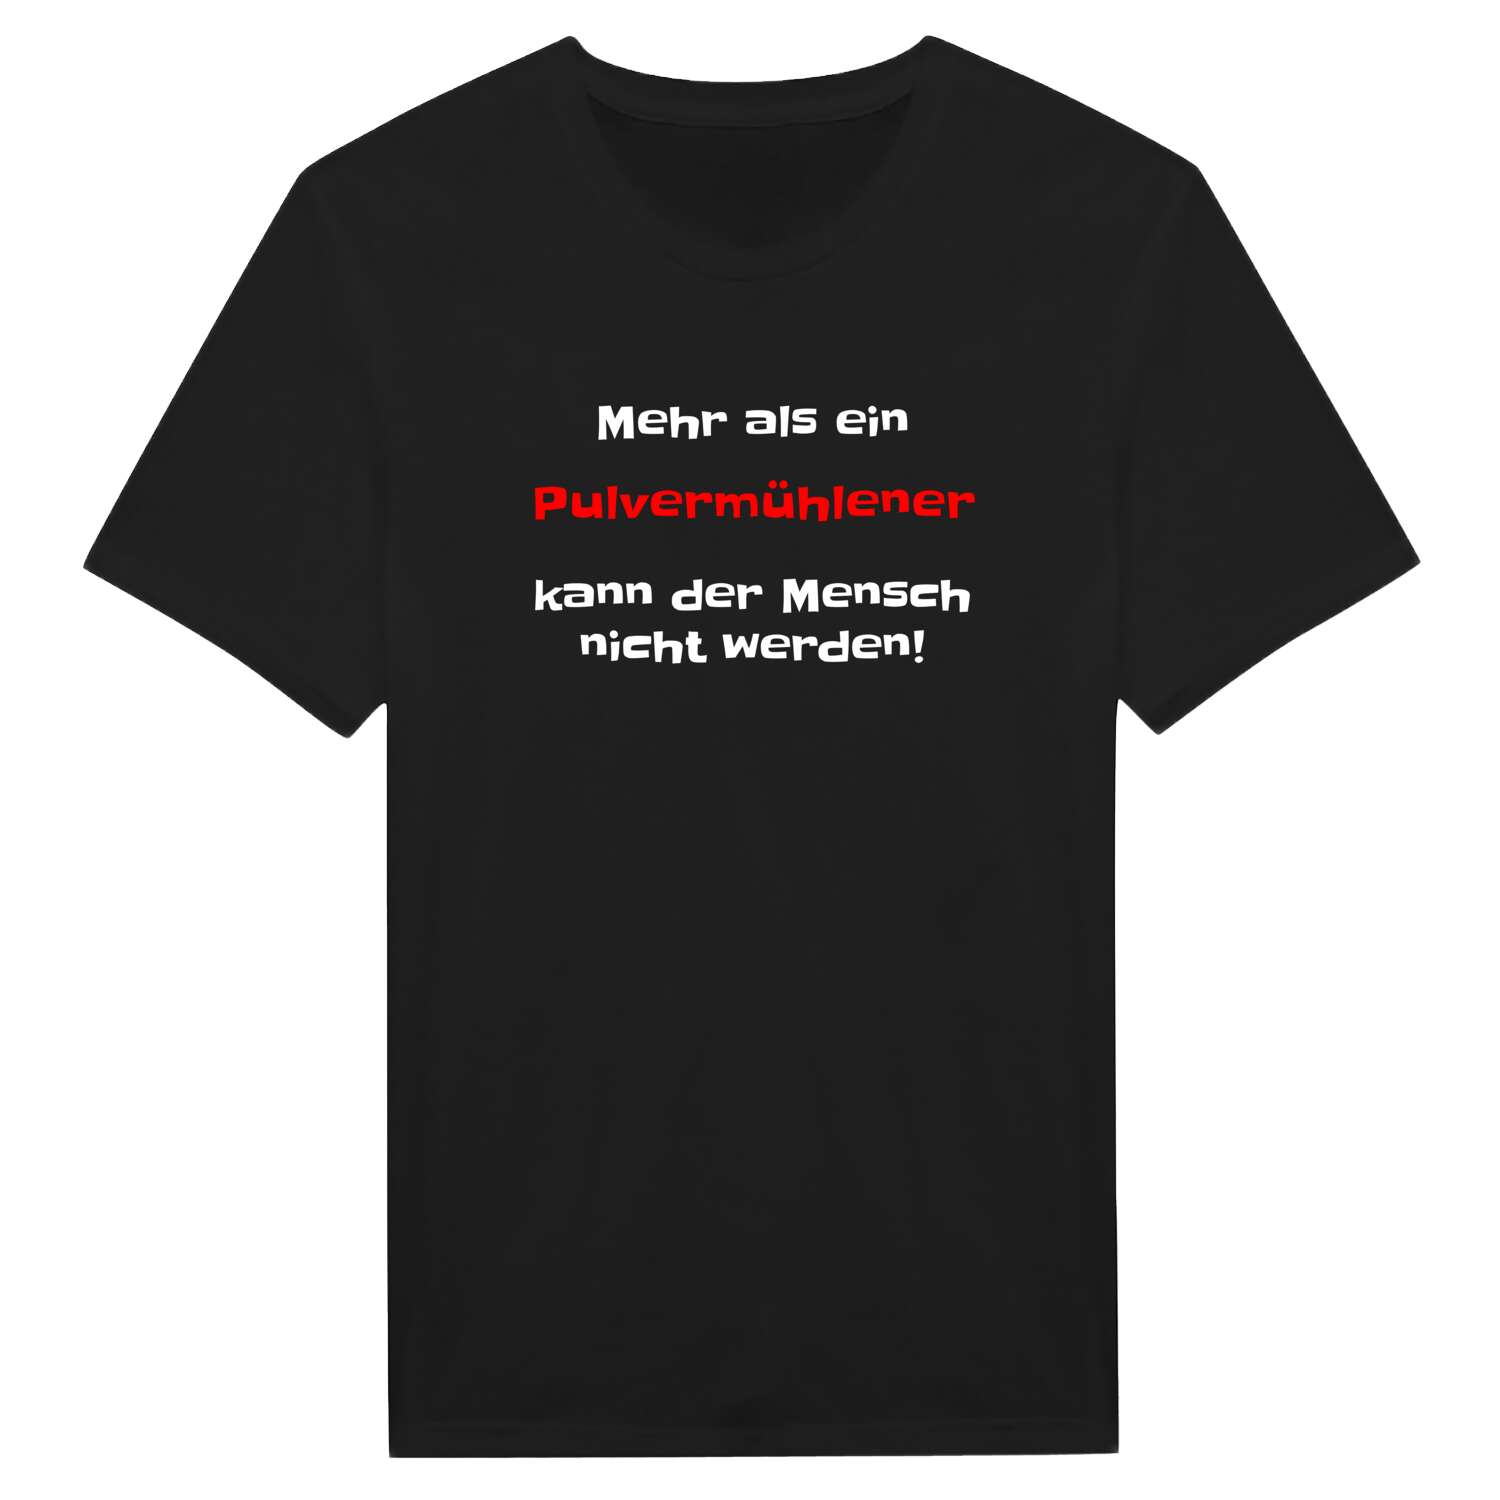 Pulvermühle T-Shirt »Mehr als ein«